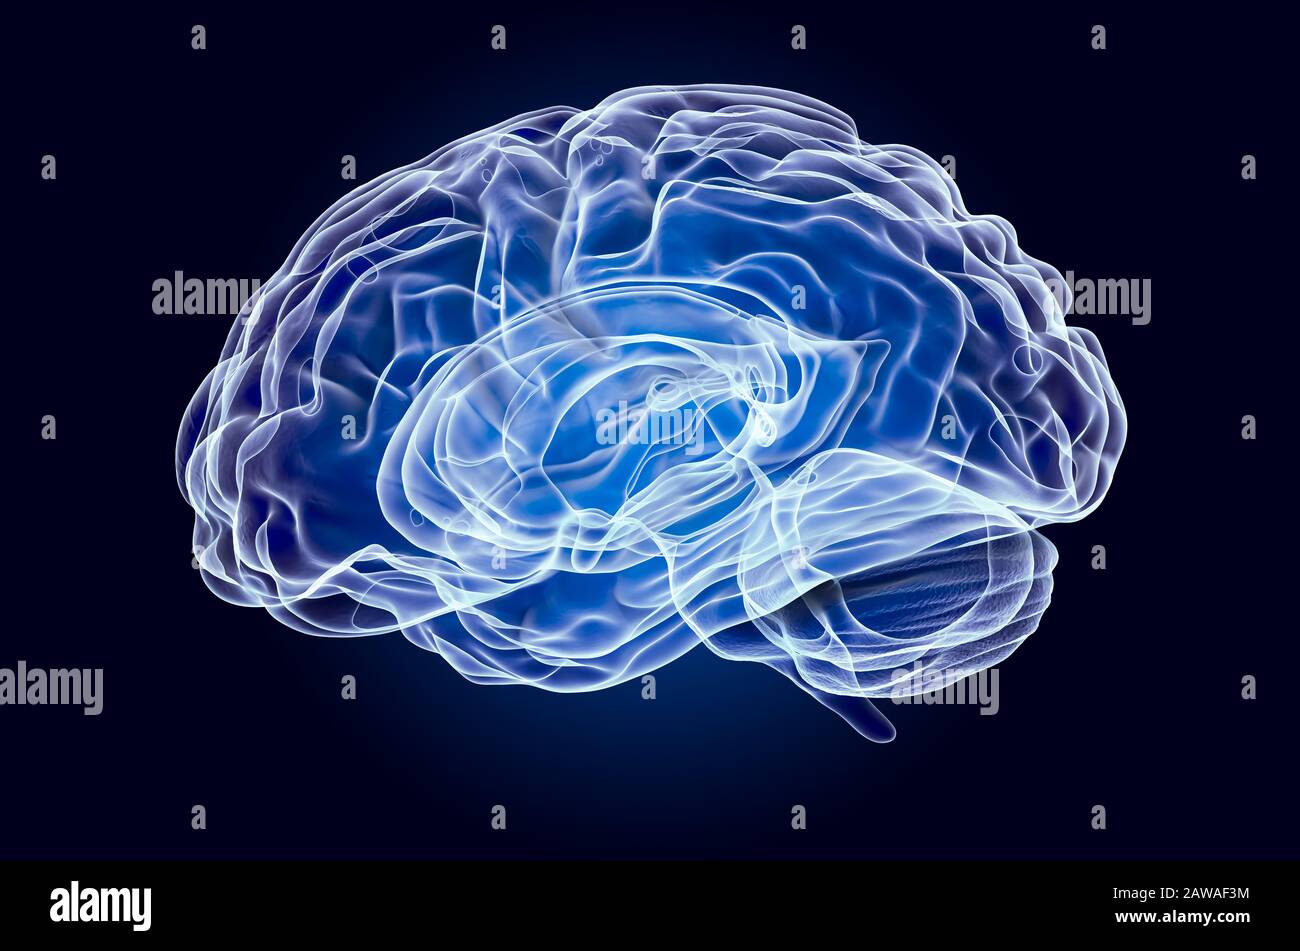 Menschliches Gehirn, Röntgenhologramm. 3D-Rendering auf dunkelblauem Hintergrund Stockfoto